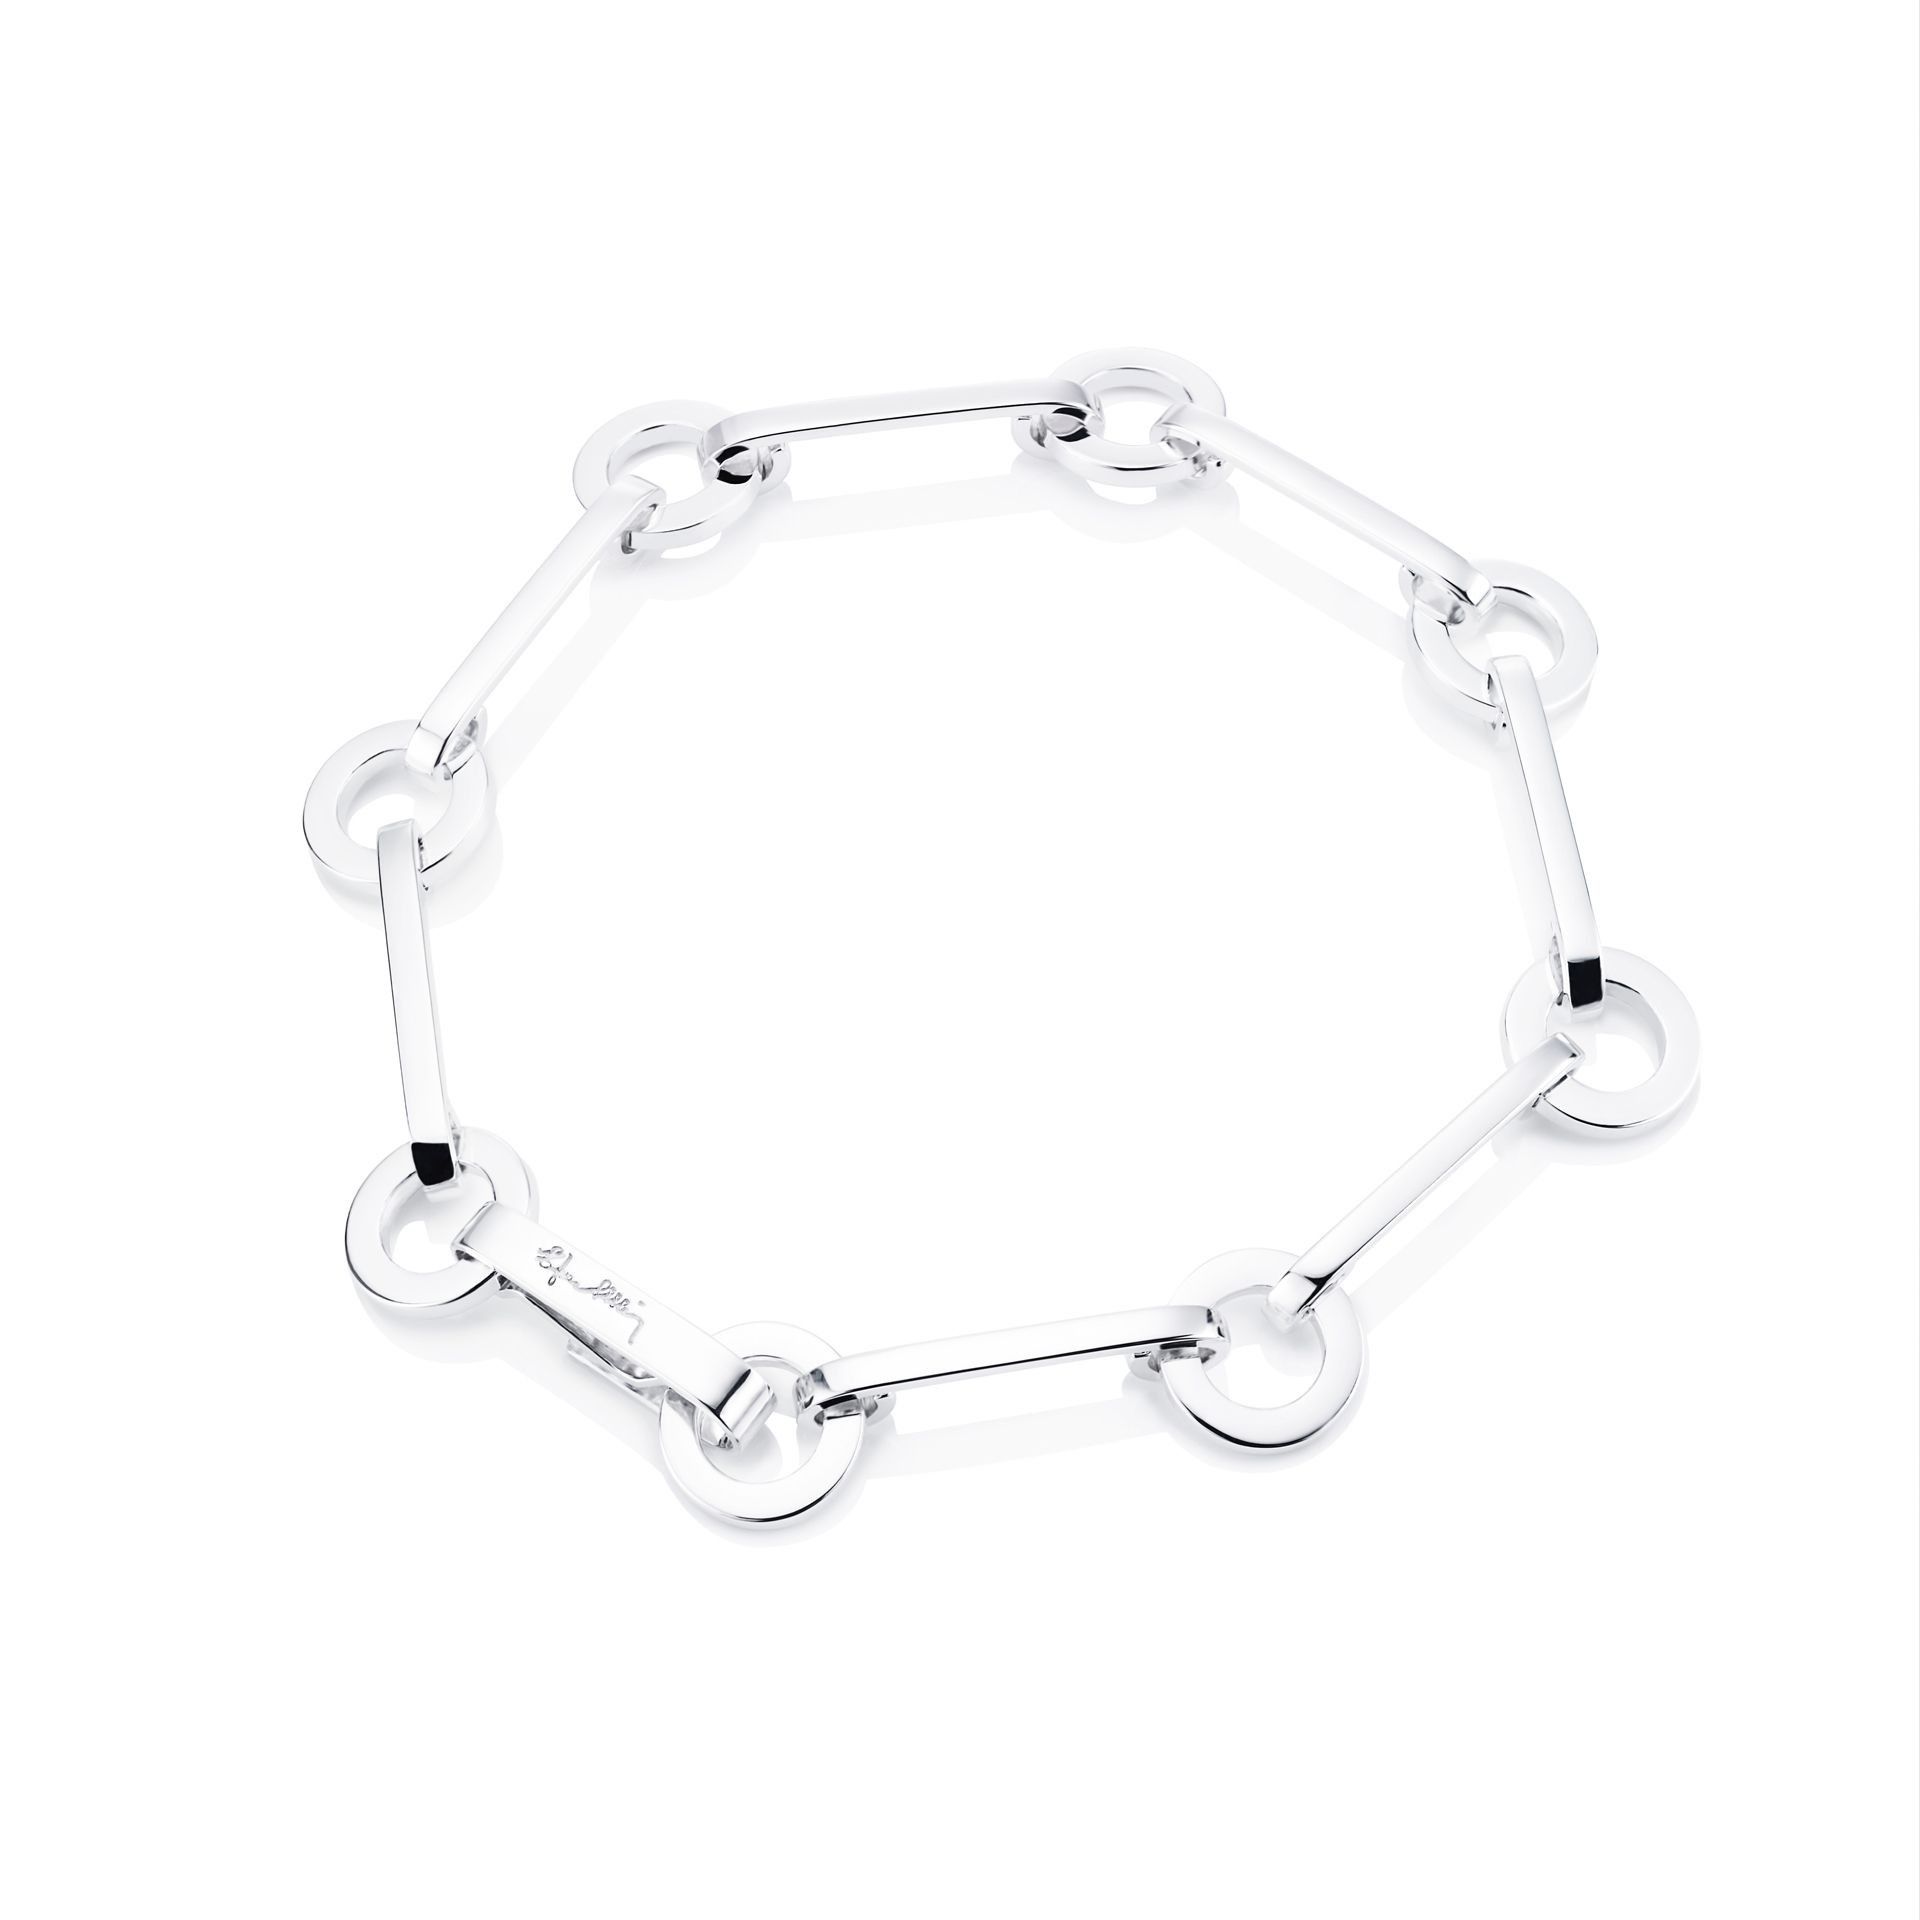 Efva Attling Ring Chain Bracelet 20 CM - SILVER